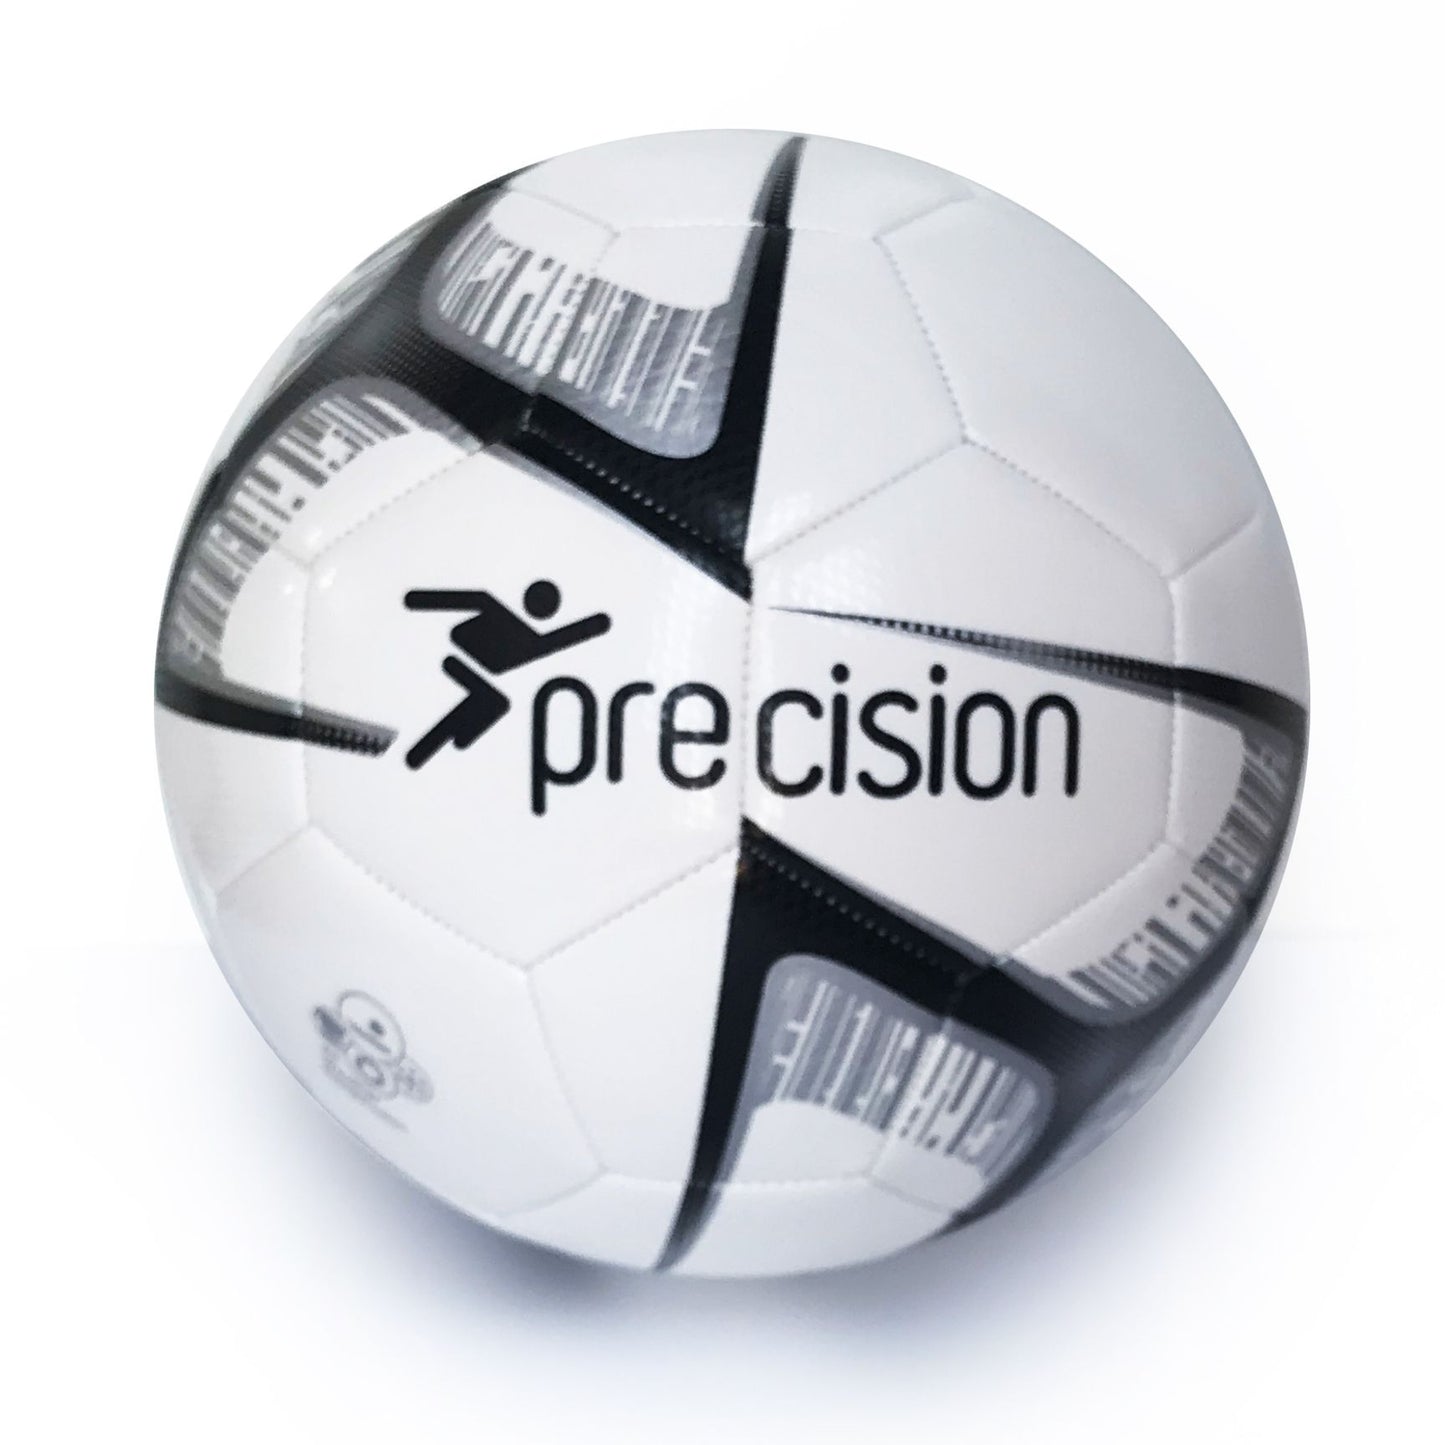 PRECISION FUSION LITE FOOTBALL - 370gms